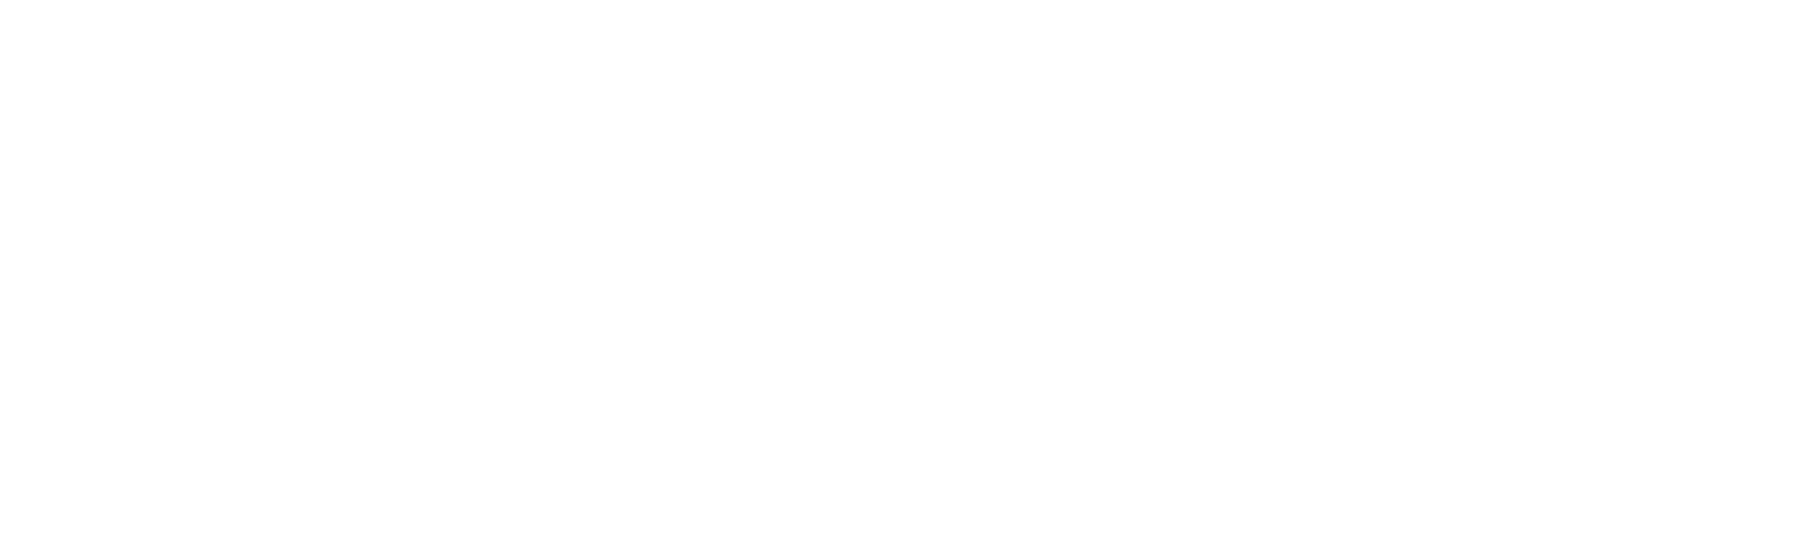 Envy: A Seven Deadly Sins Story logo